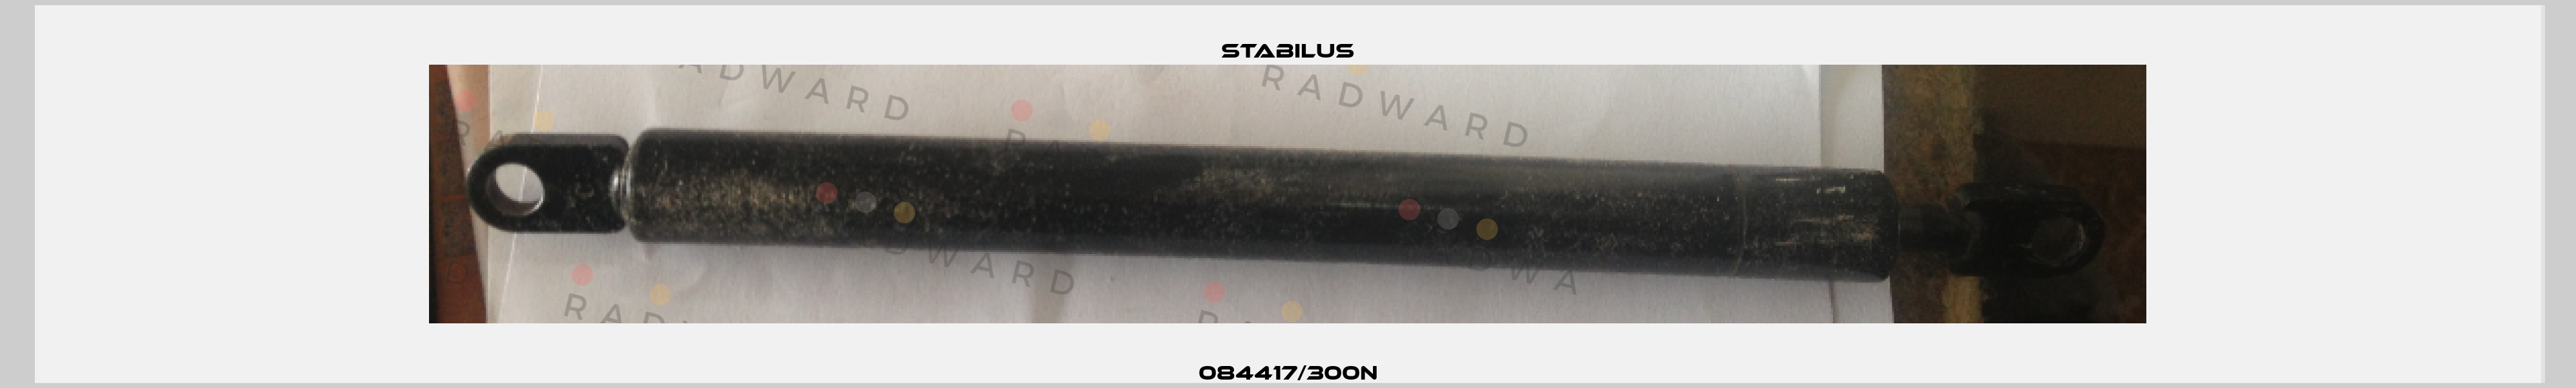 084417/300N Stabilus